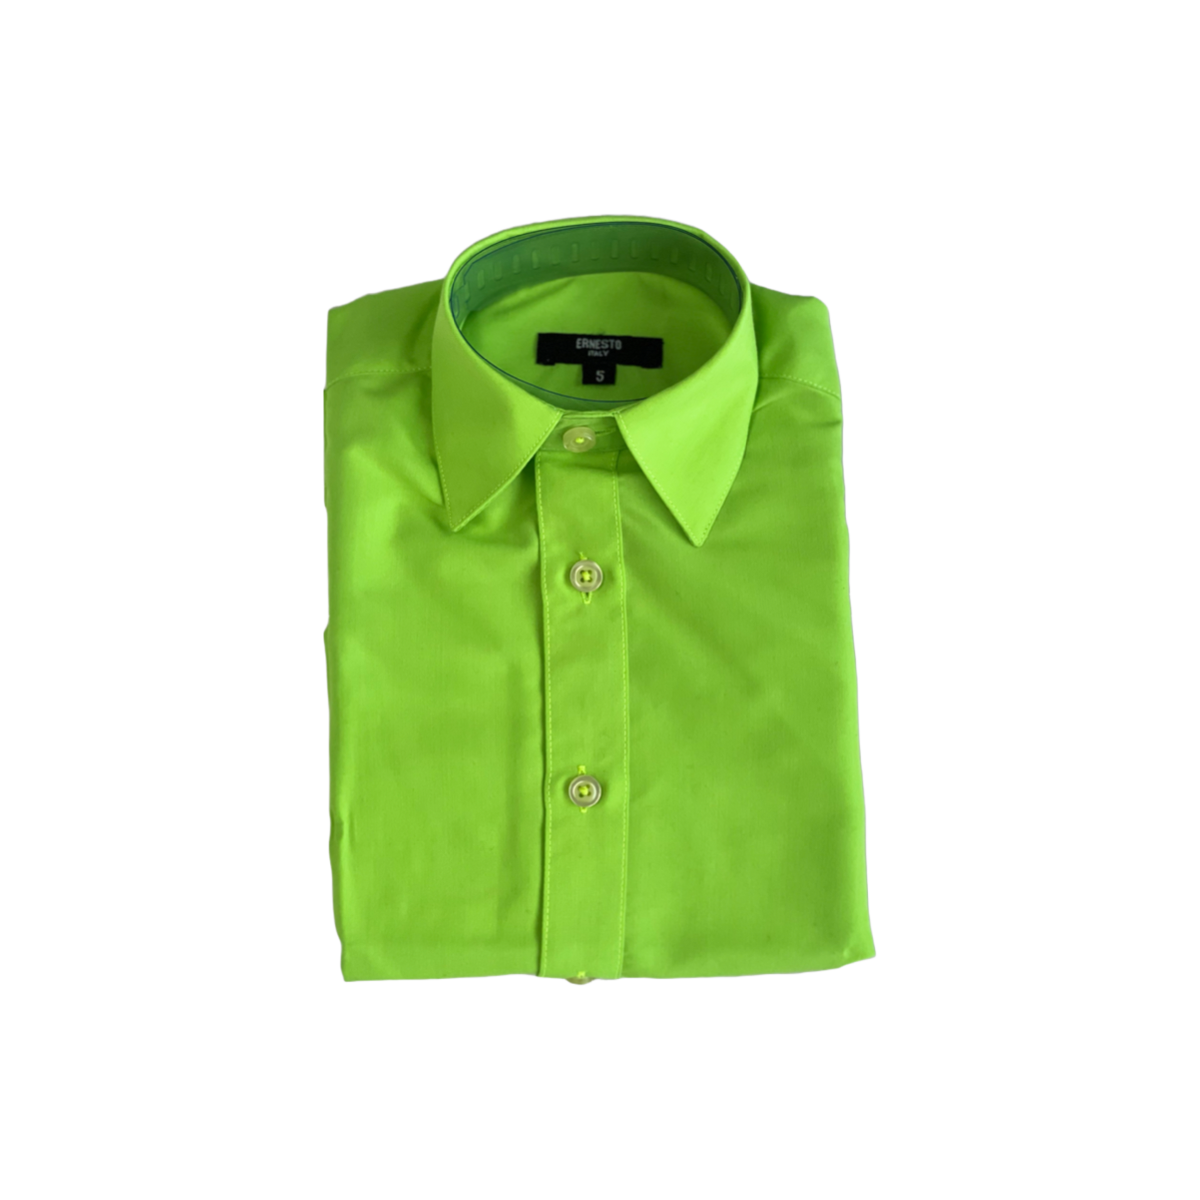 Ernesto Lime Green Modern Fit Dress Shirt